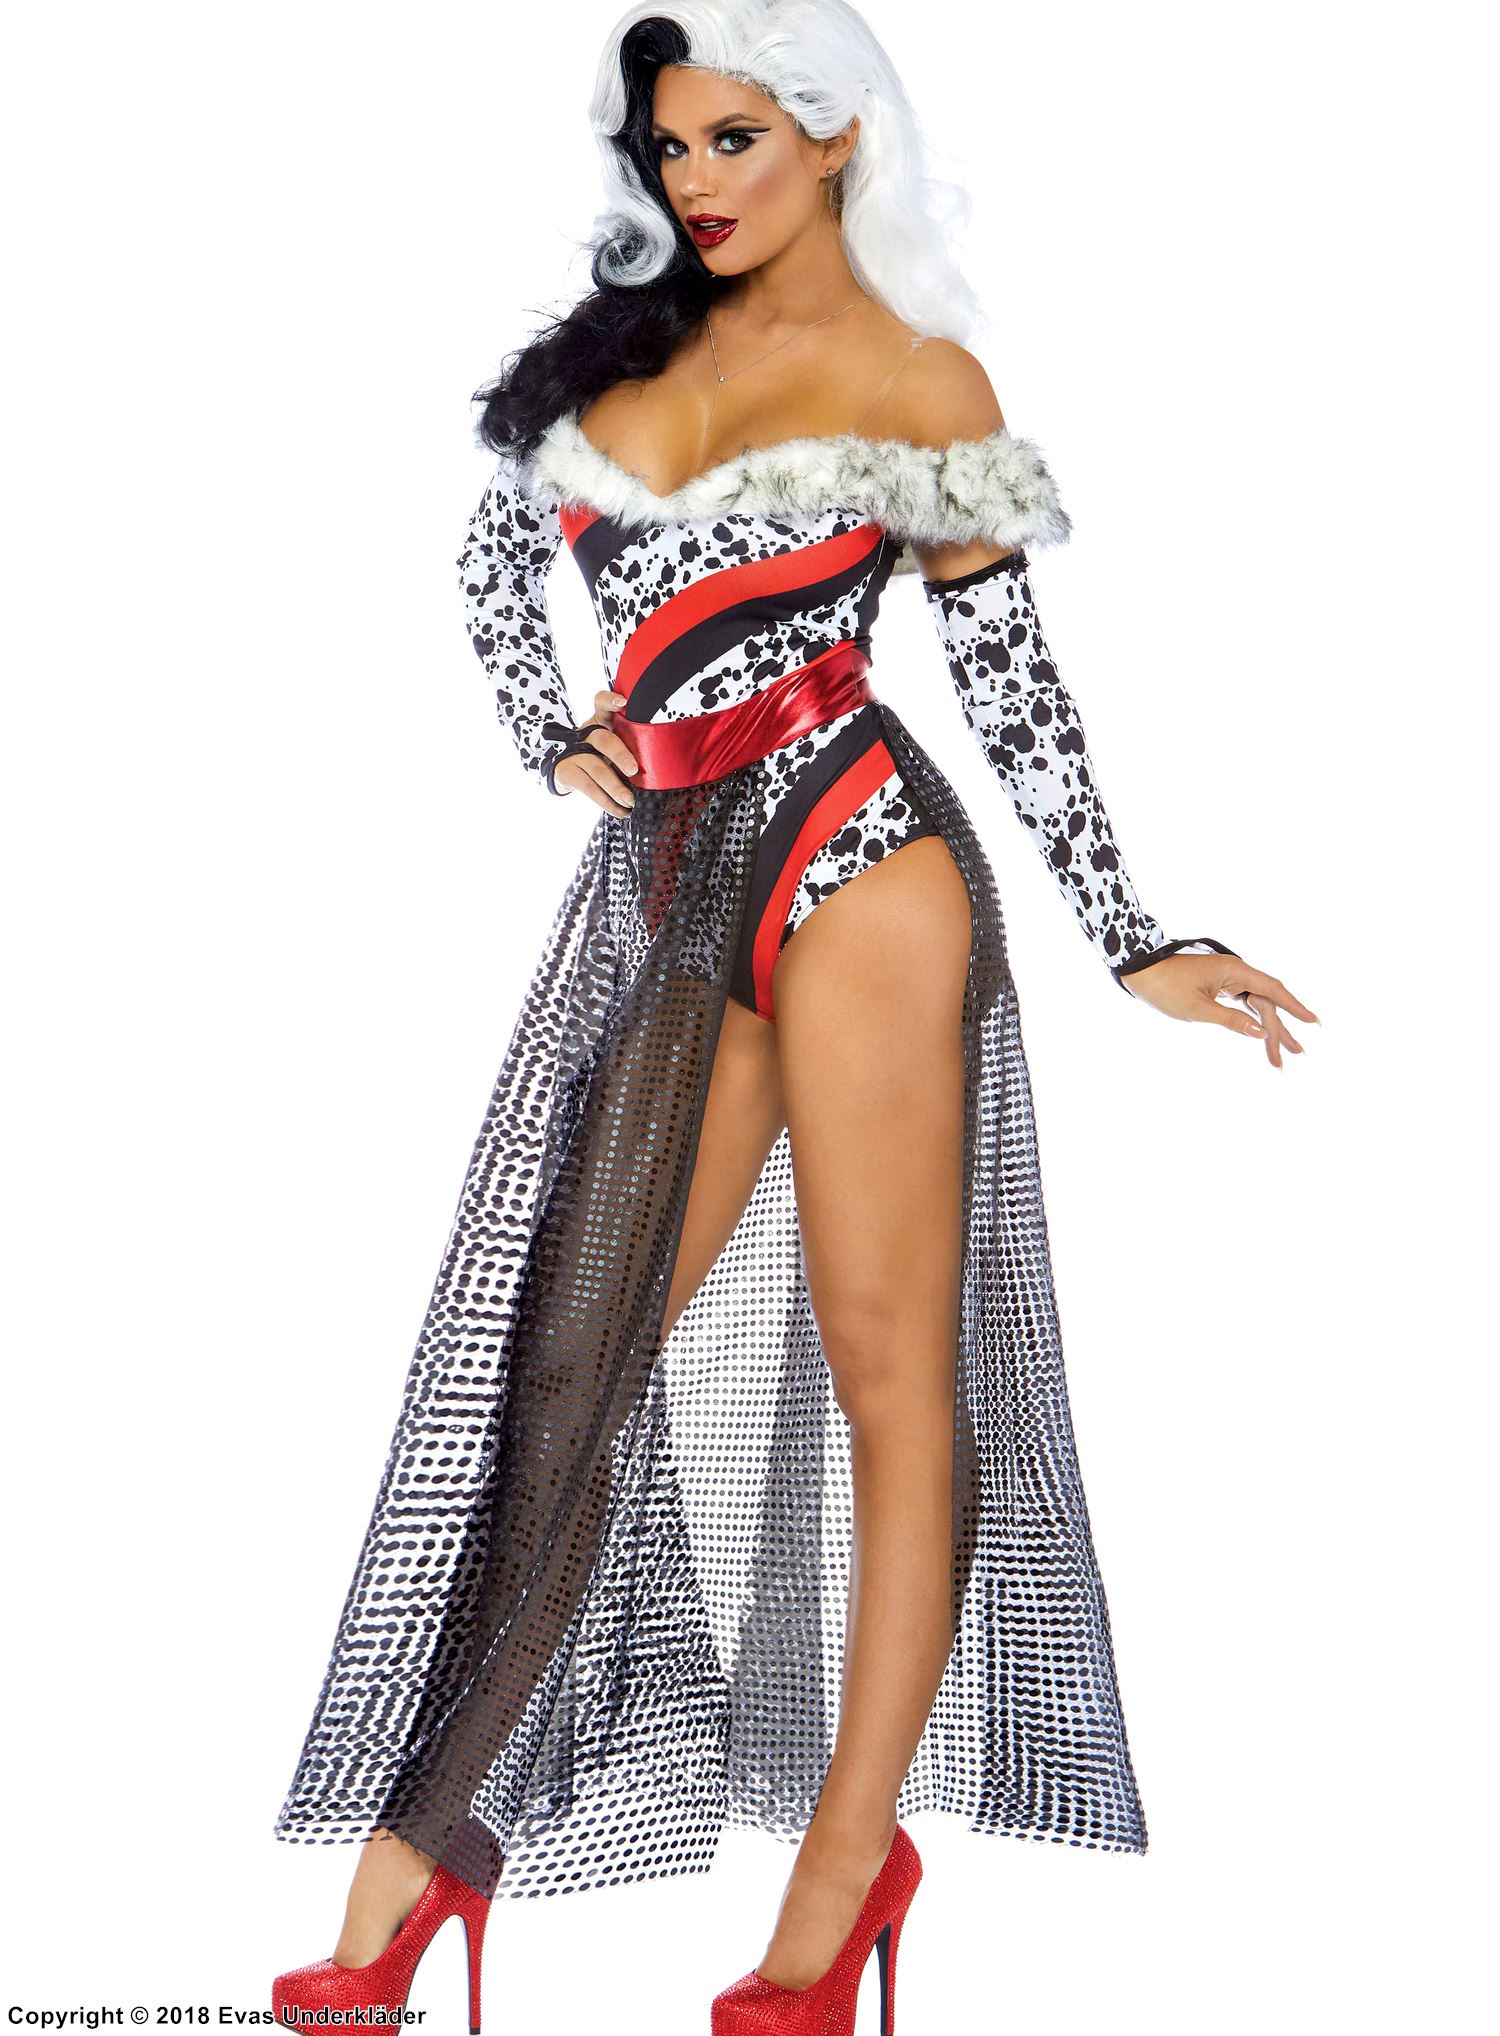 Cruella de Vil, top and skirt costume, faux fur, off shoulder